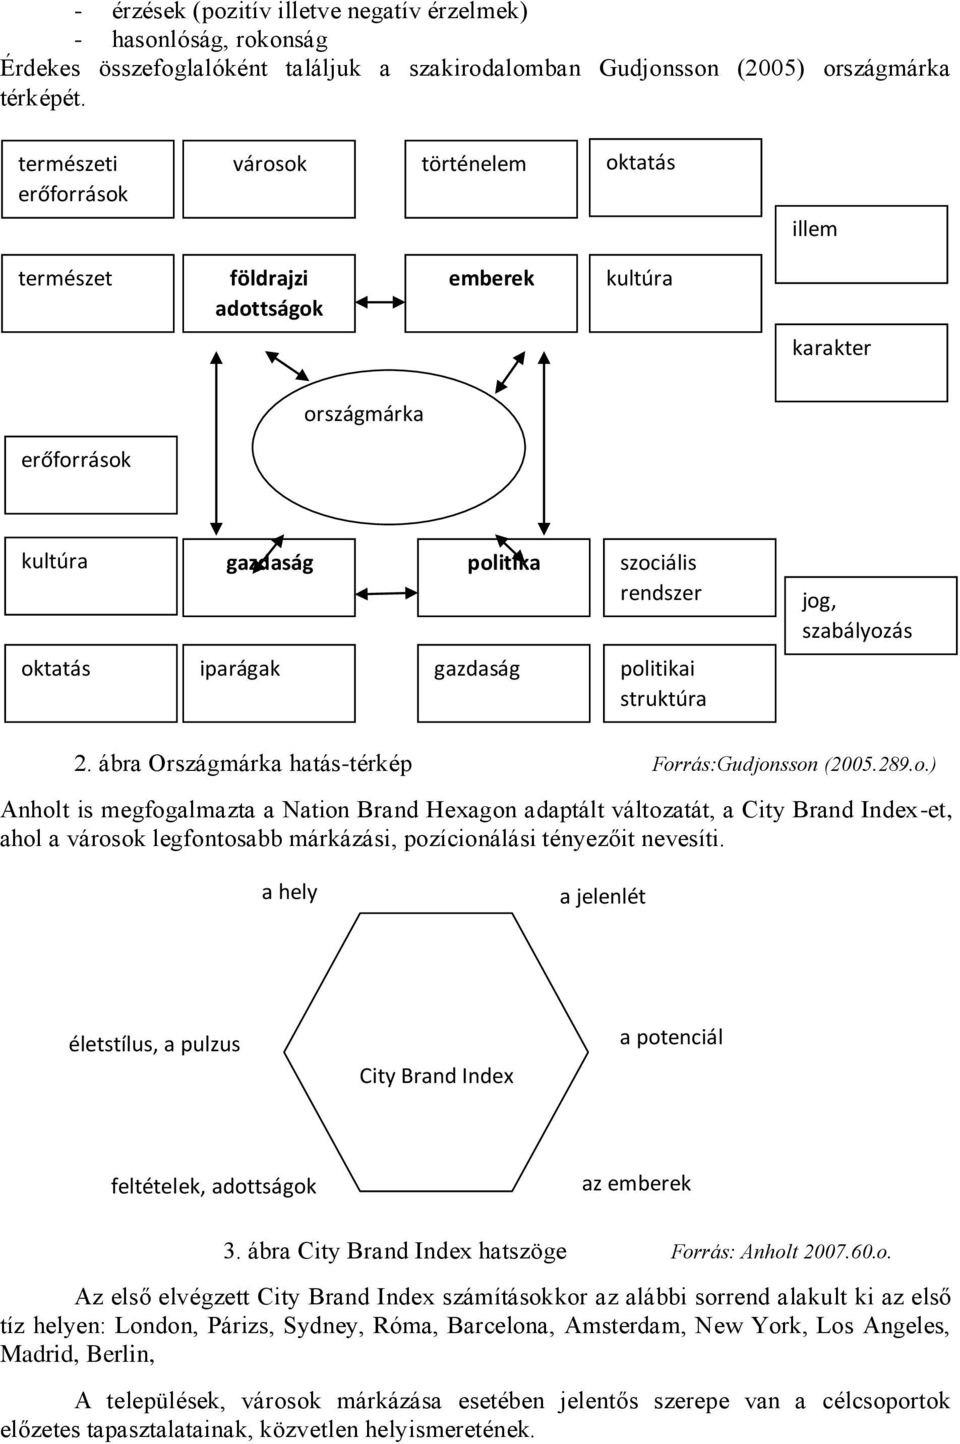 oktatás iparágak gazdaság politikai struktúra 2. ábra Országmárka hatás-térkép Forrás:Gudjonsson (2005.289.o.) Anholt is megfogalmazta a Nation Brand Hexagon adaptált változatát, a City Brand Index-et, ahol a városok legfontosabb márkázási, pozícionálási tényezőit nevesíti.